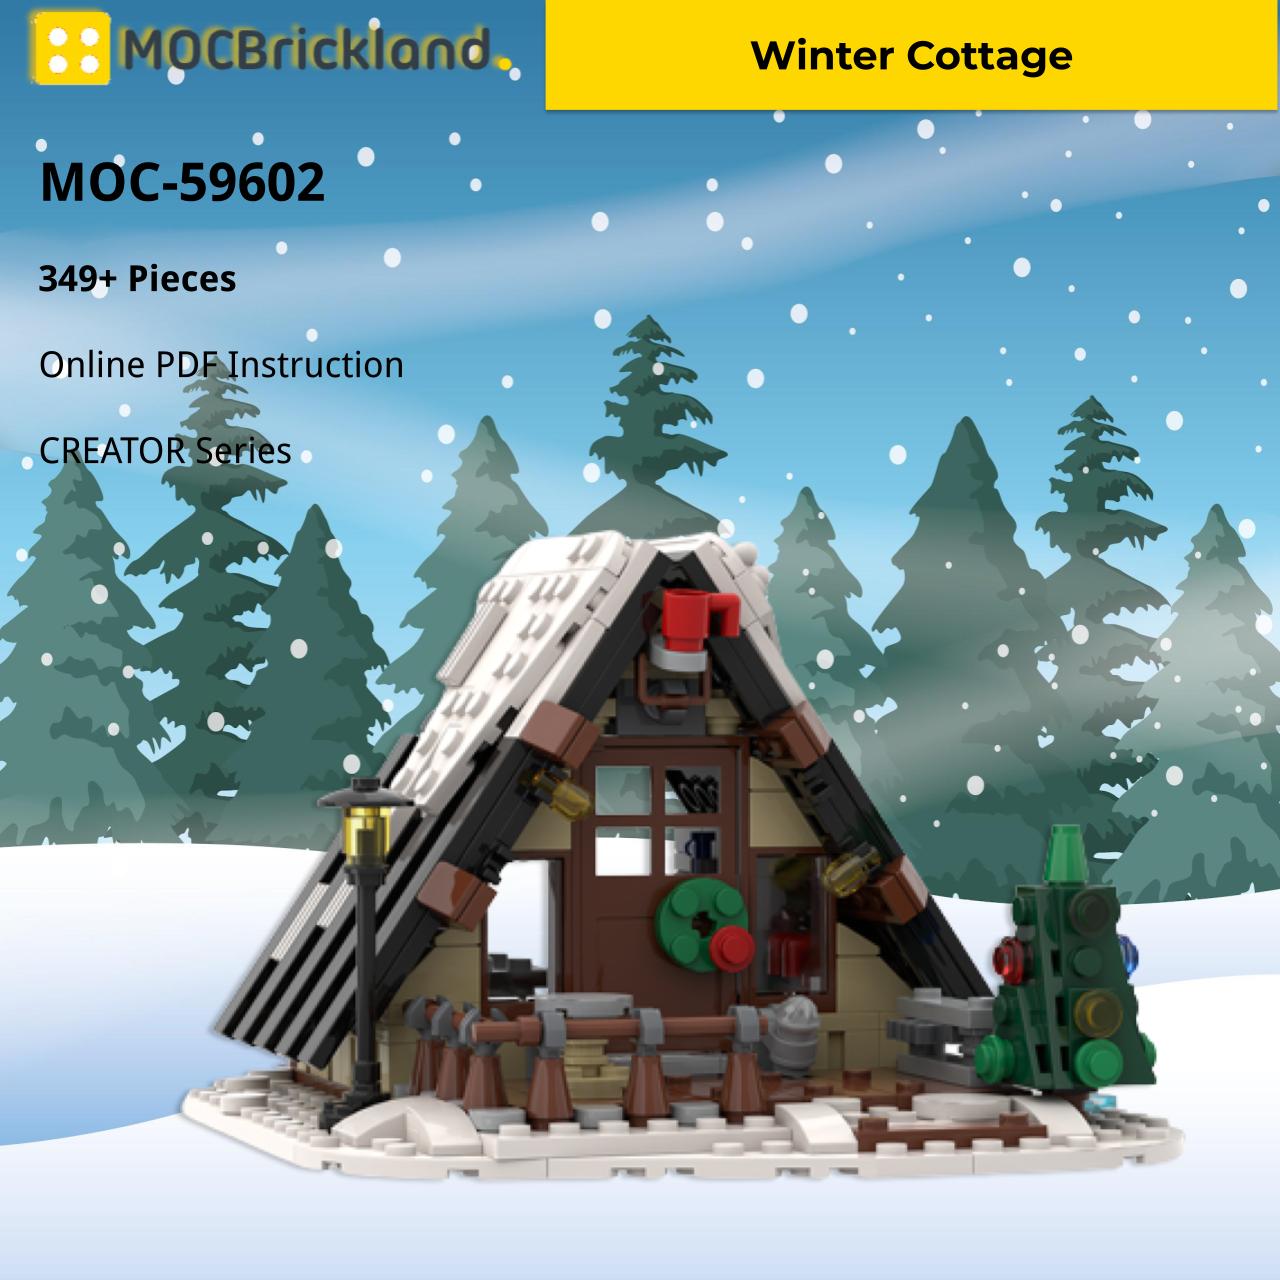 MOCBRICKLAND MOC-59602 Winter Cottage